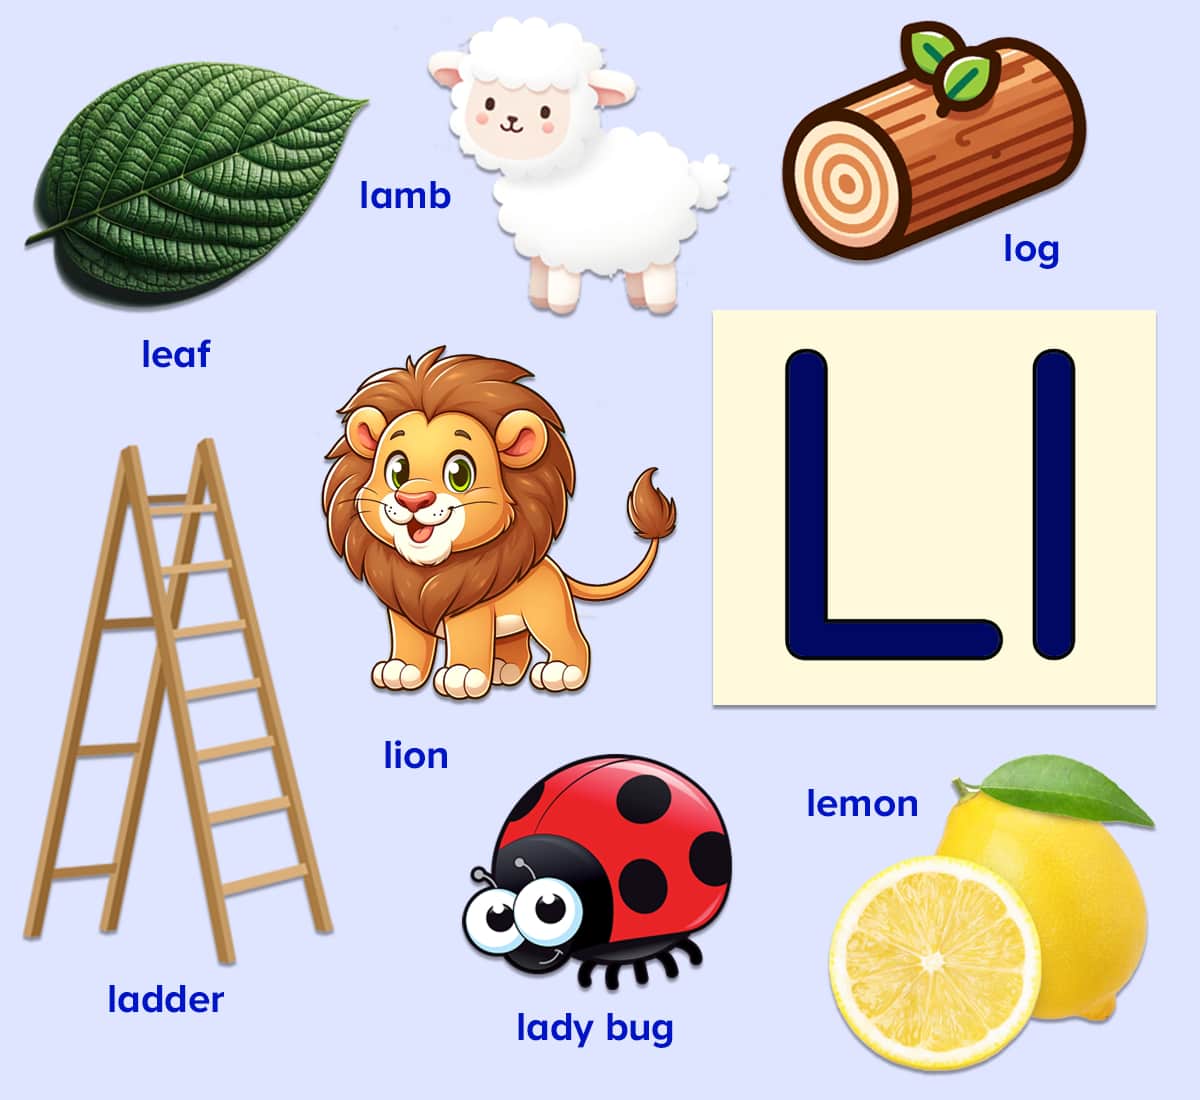 Words that start with the letter l poster for kids. Leaf, lamb, log, ladder, lion, lady bug, lemon. 